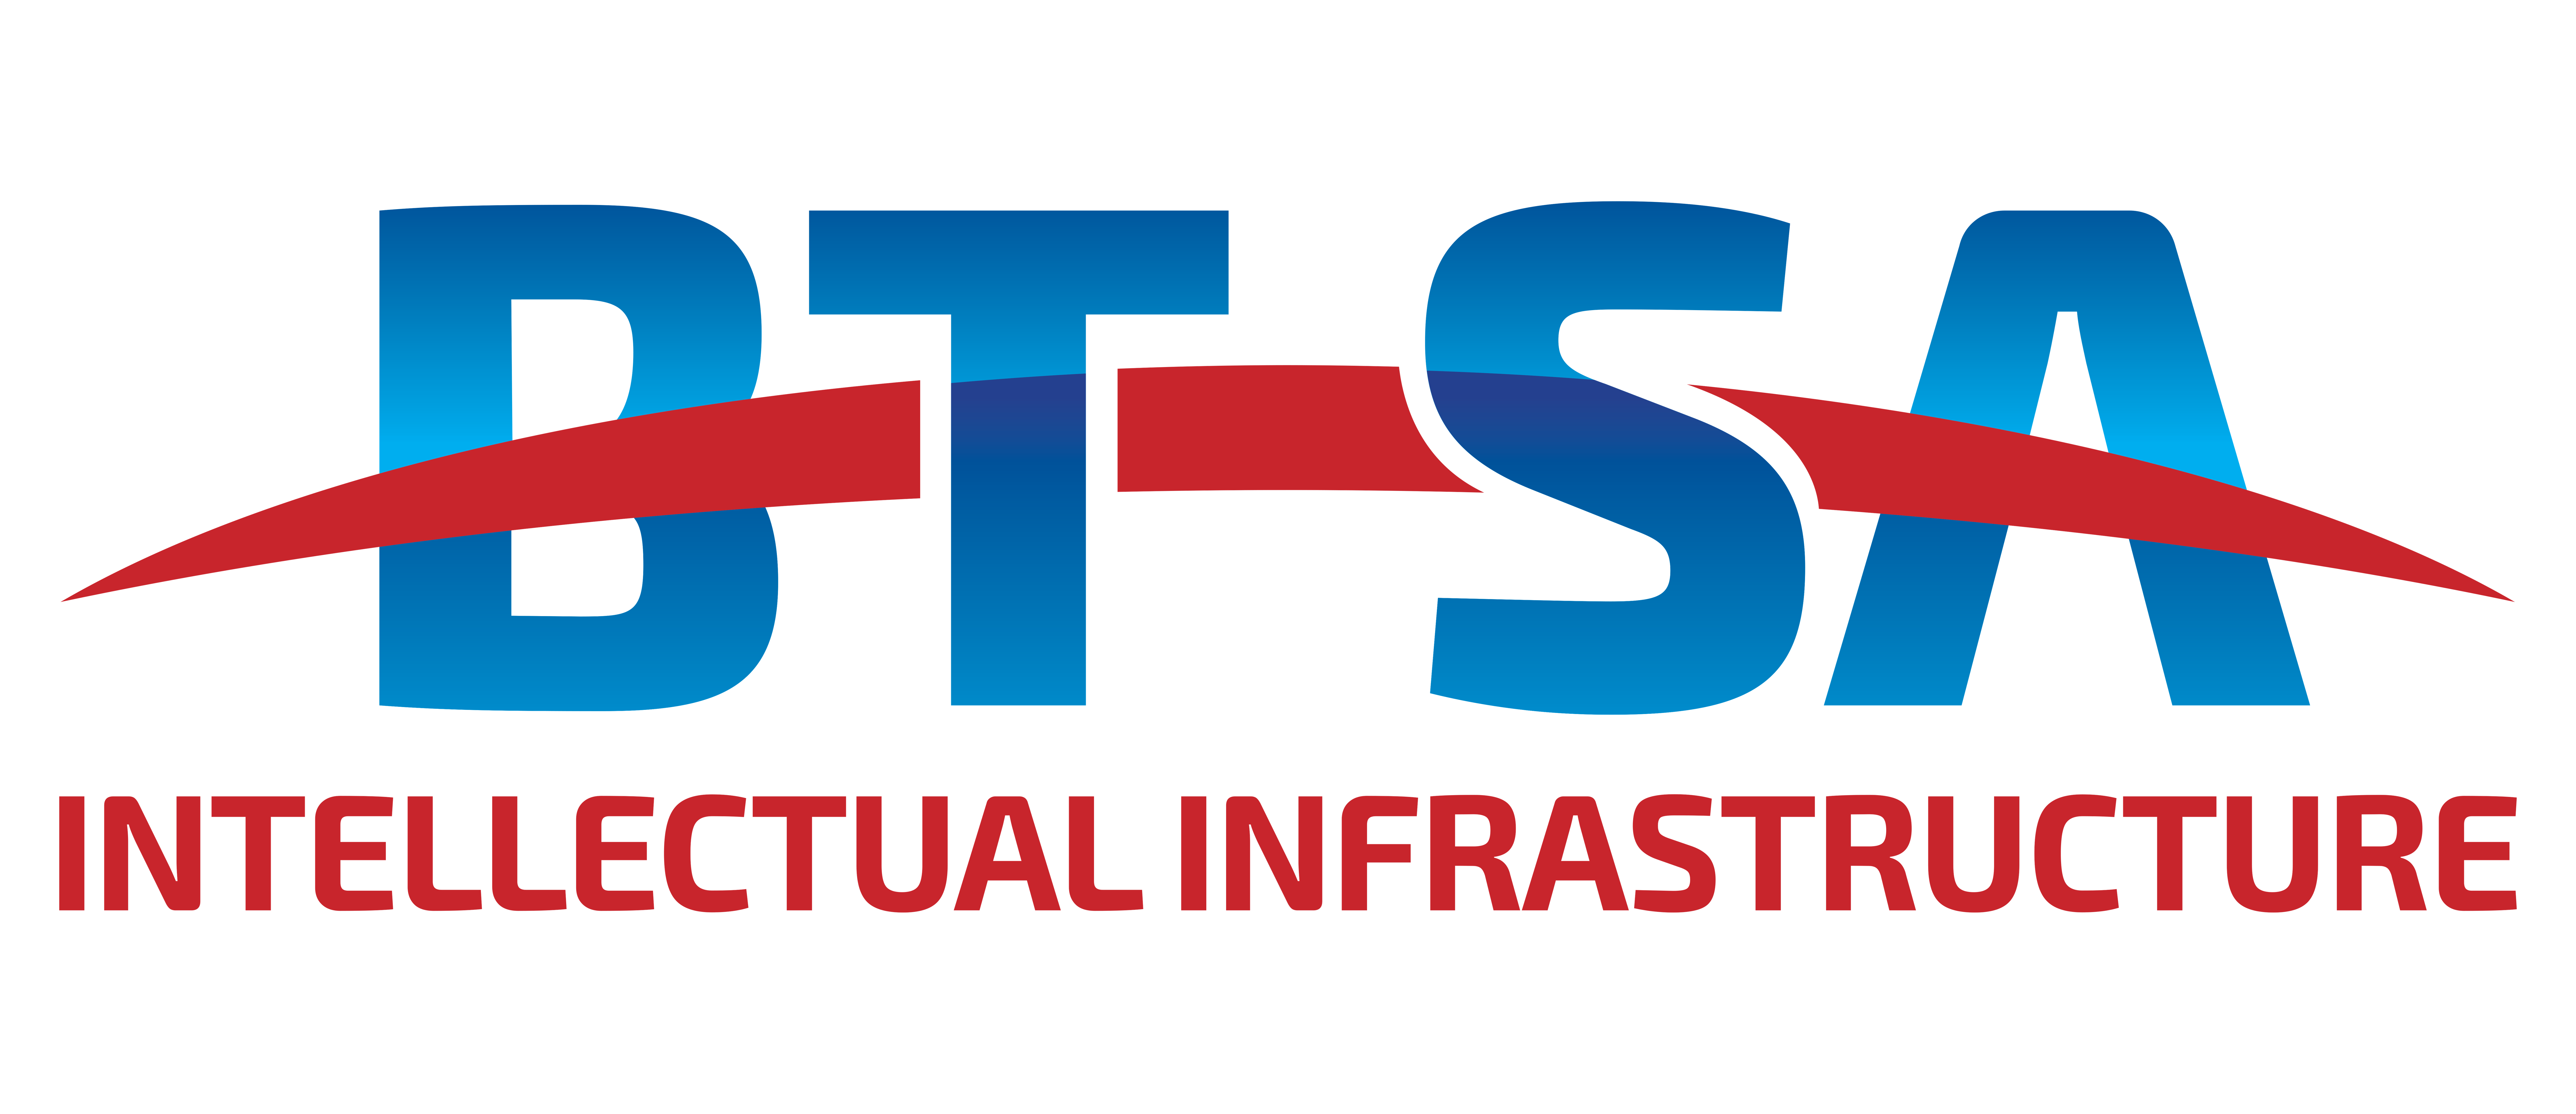 BTSA (Pty) Ltd logo